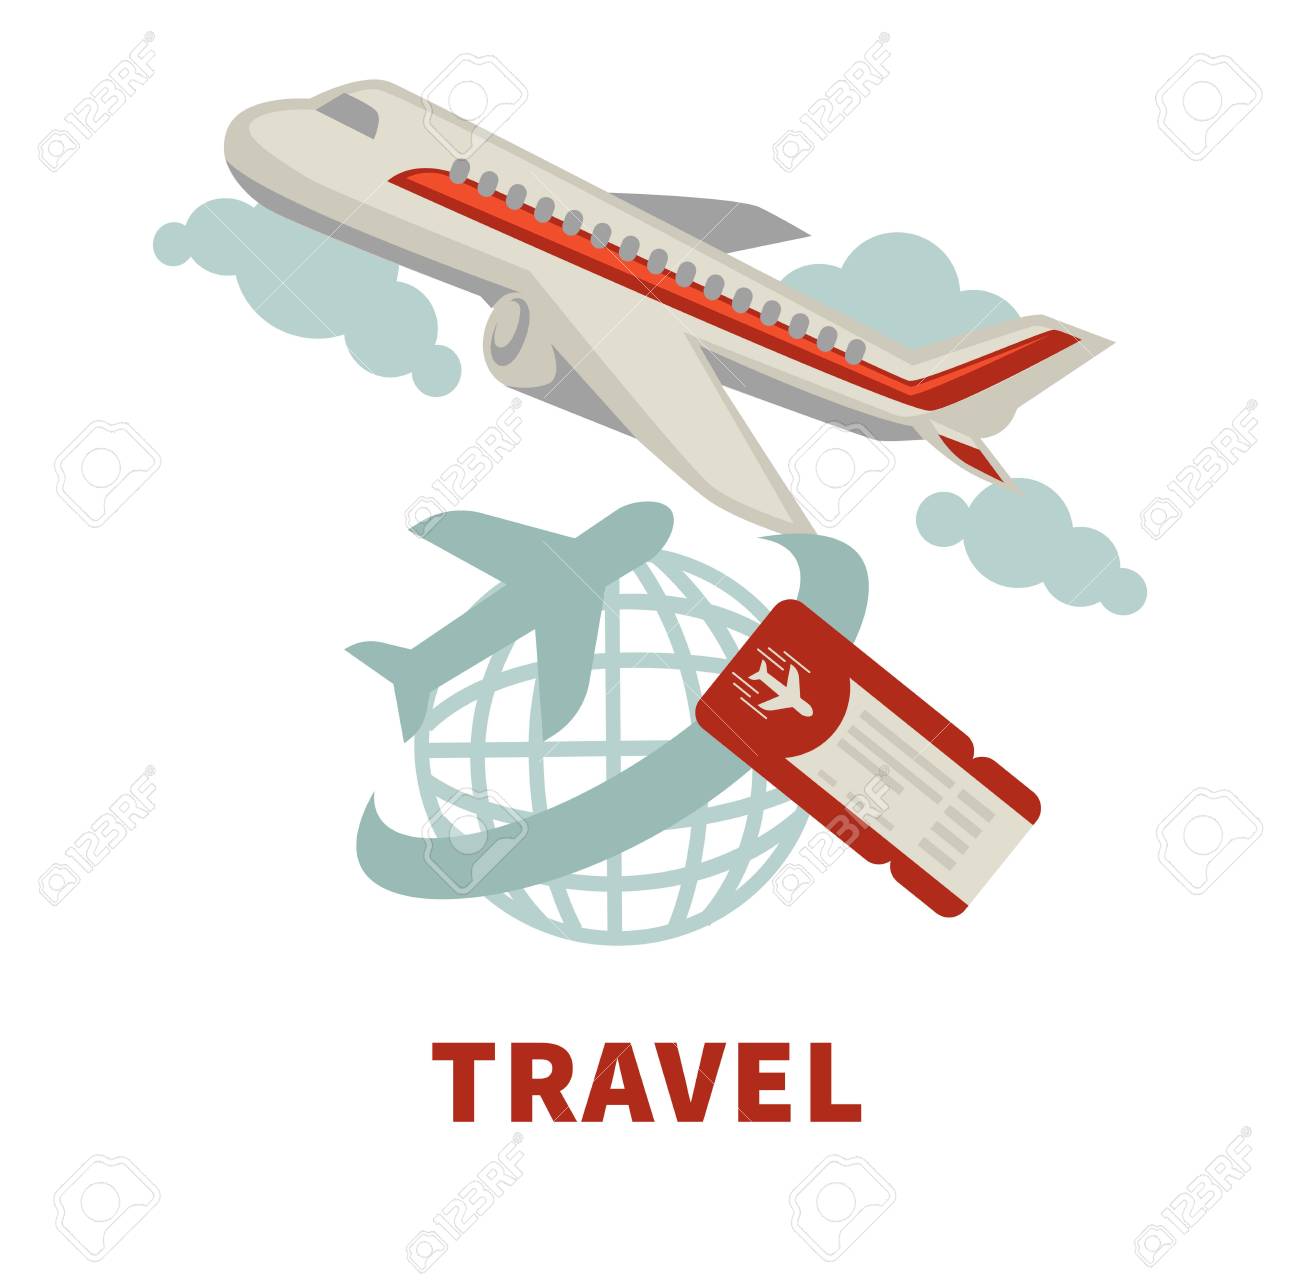 Aerolínea o agencia de viajes